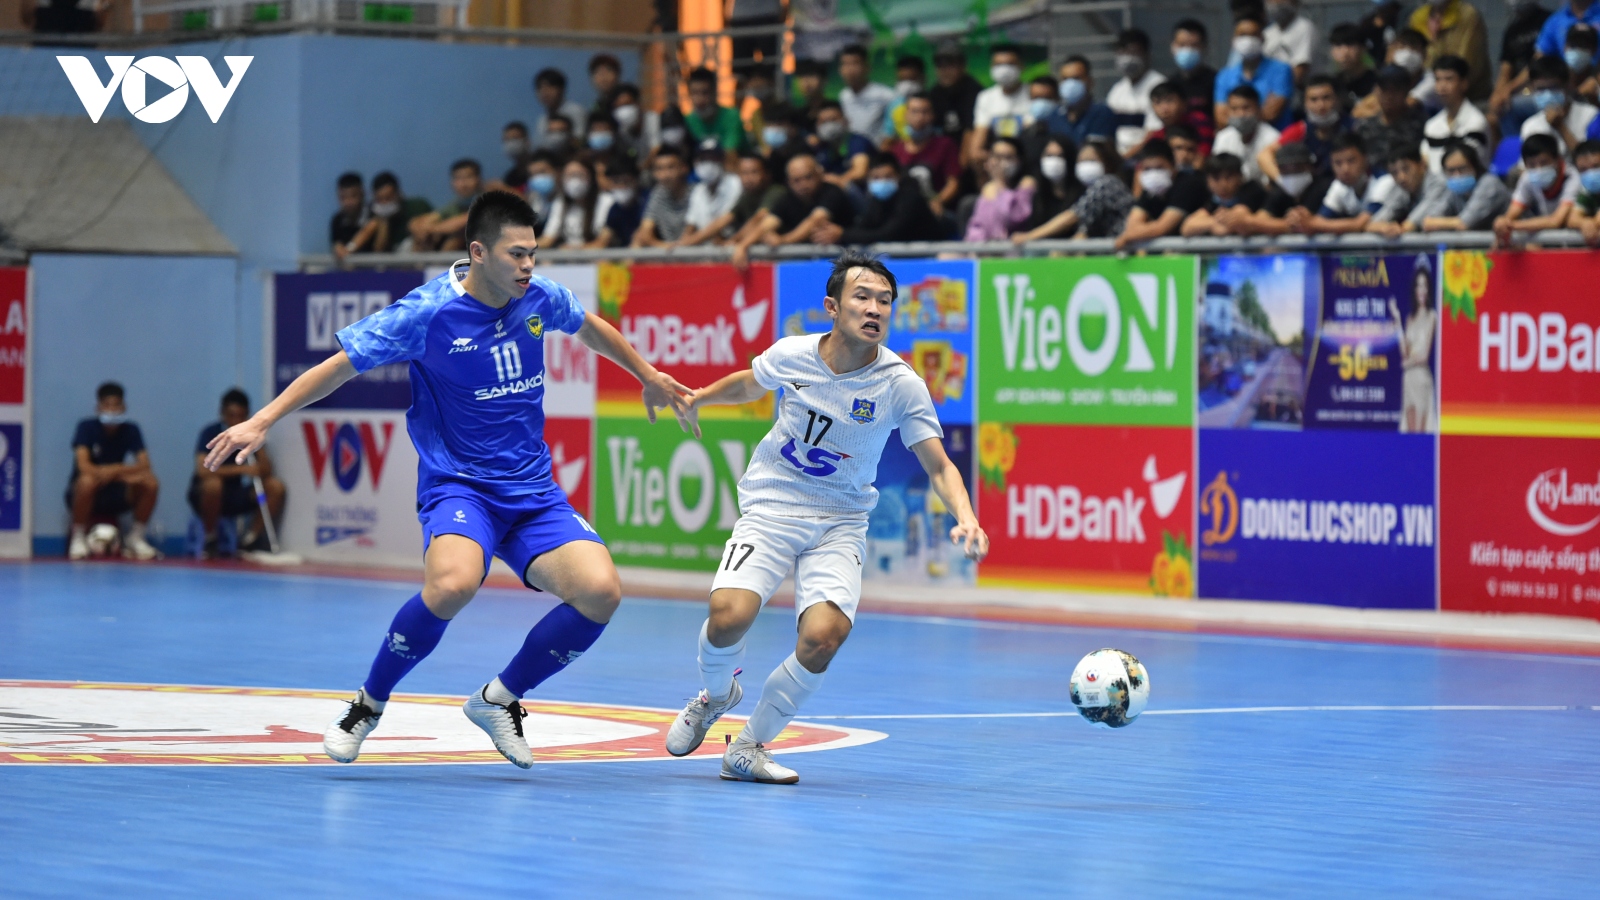 Giải Futsal HDBank VĐQG 2021: Sahako vô địch lượt đi